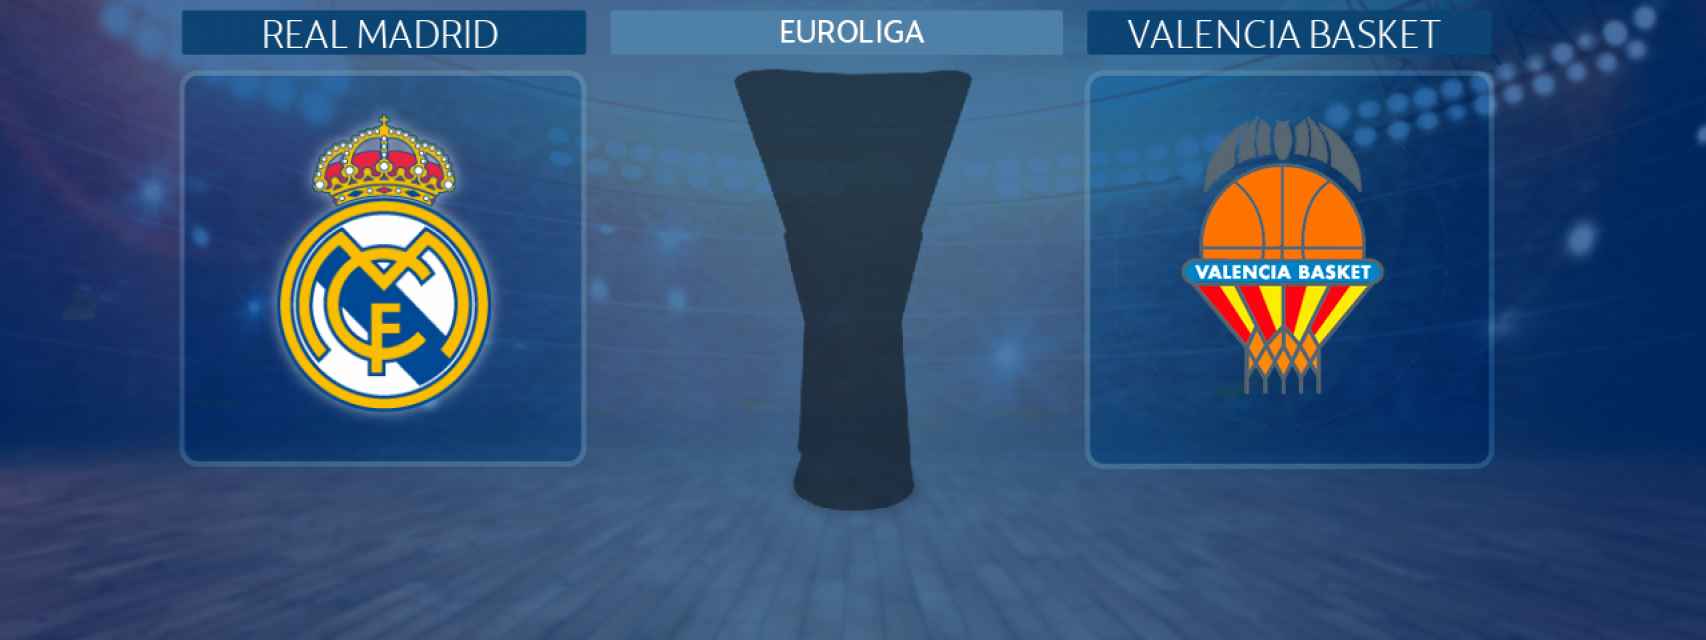 Real Madrid - Valencia Basket, partido de la Euroliga